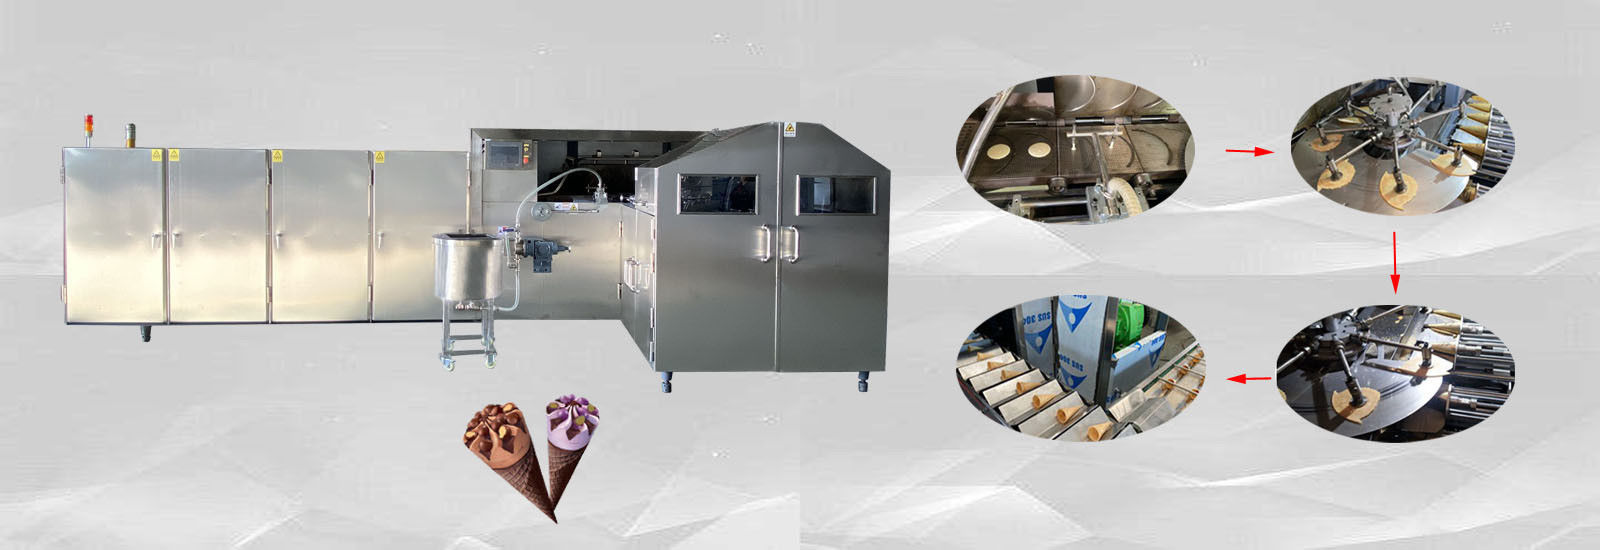 ποιότητας μηχανή ψησίματος κώνων παγωτού εργοστάσιο